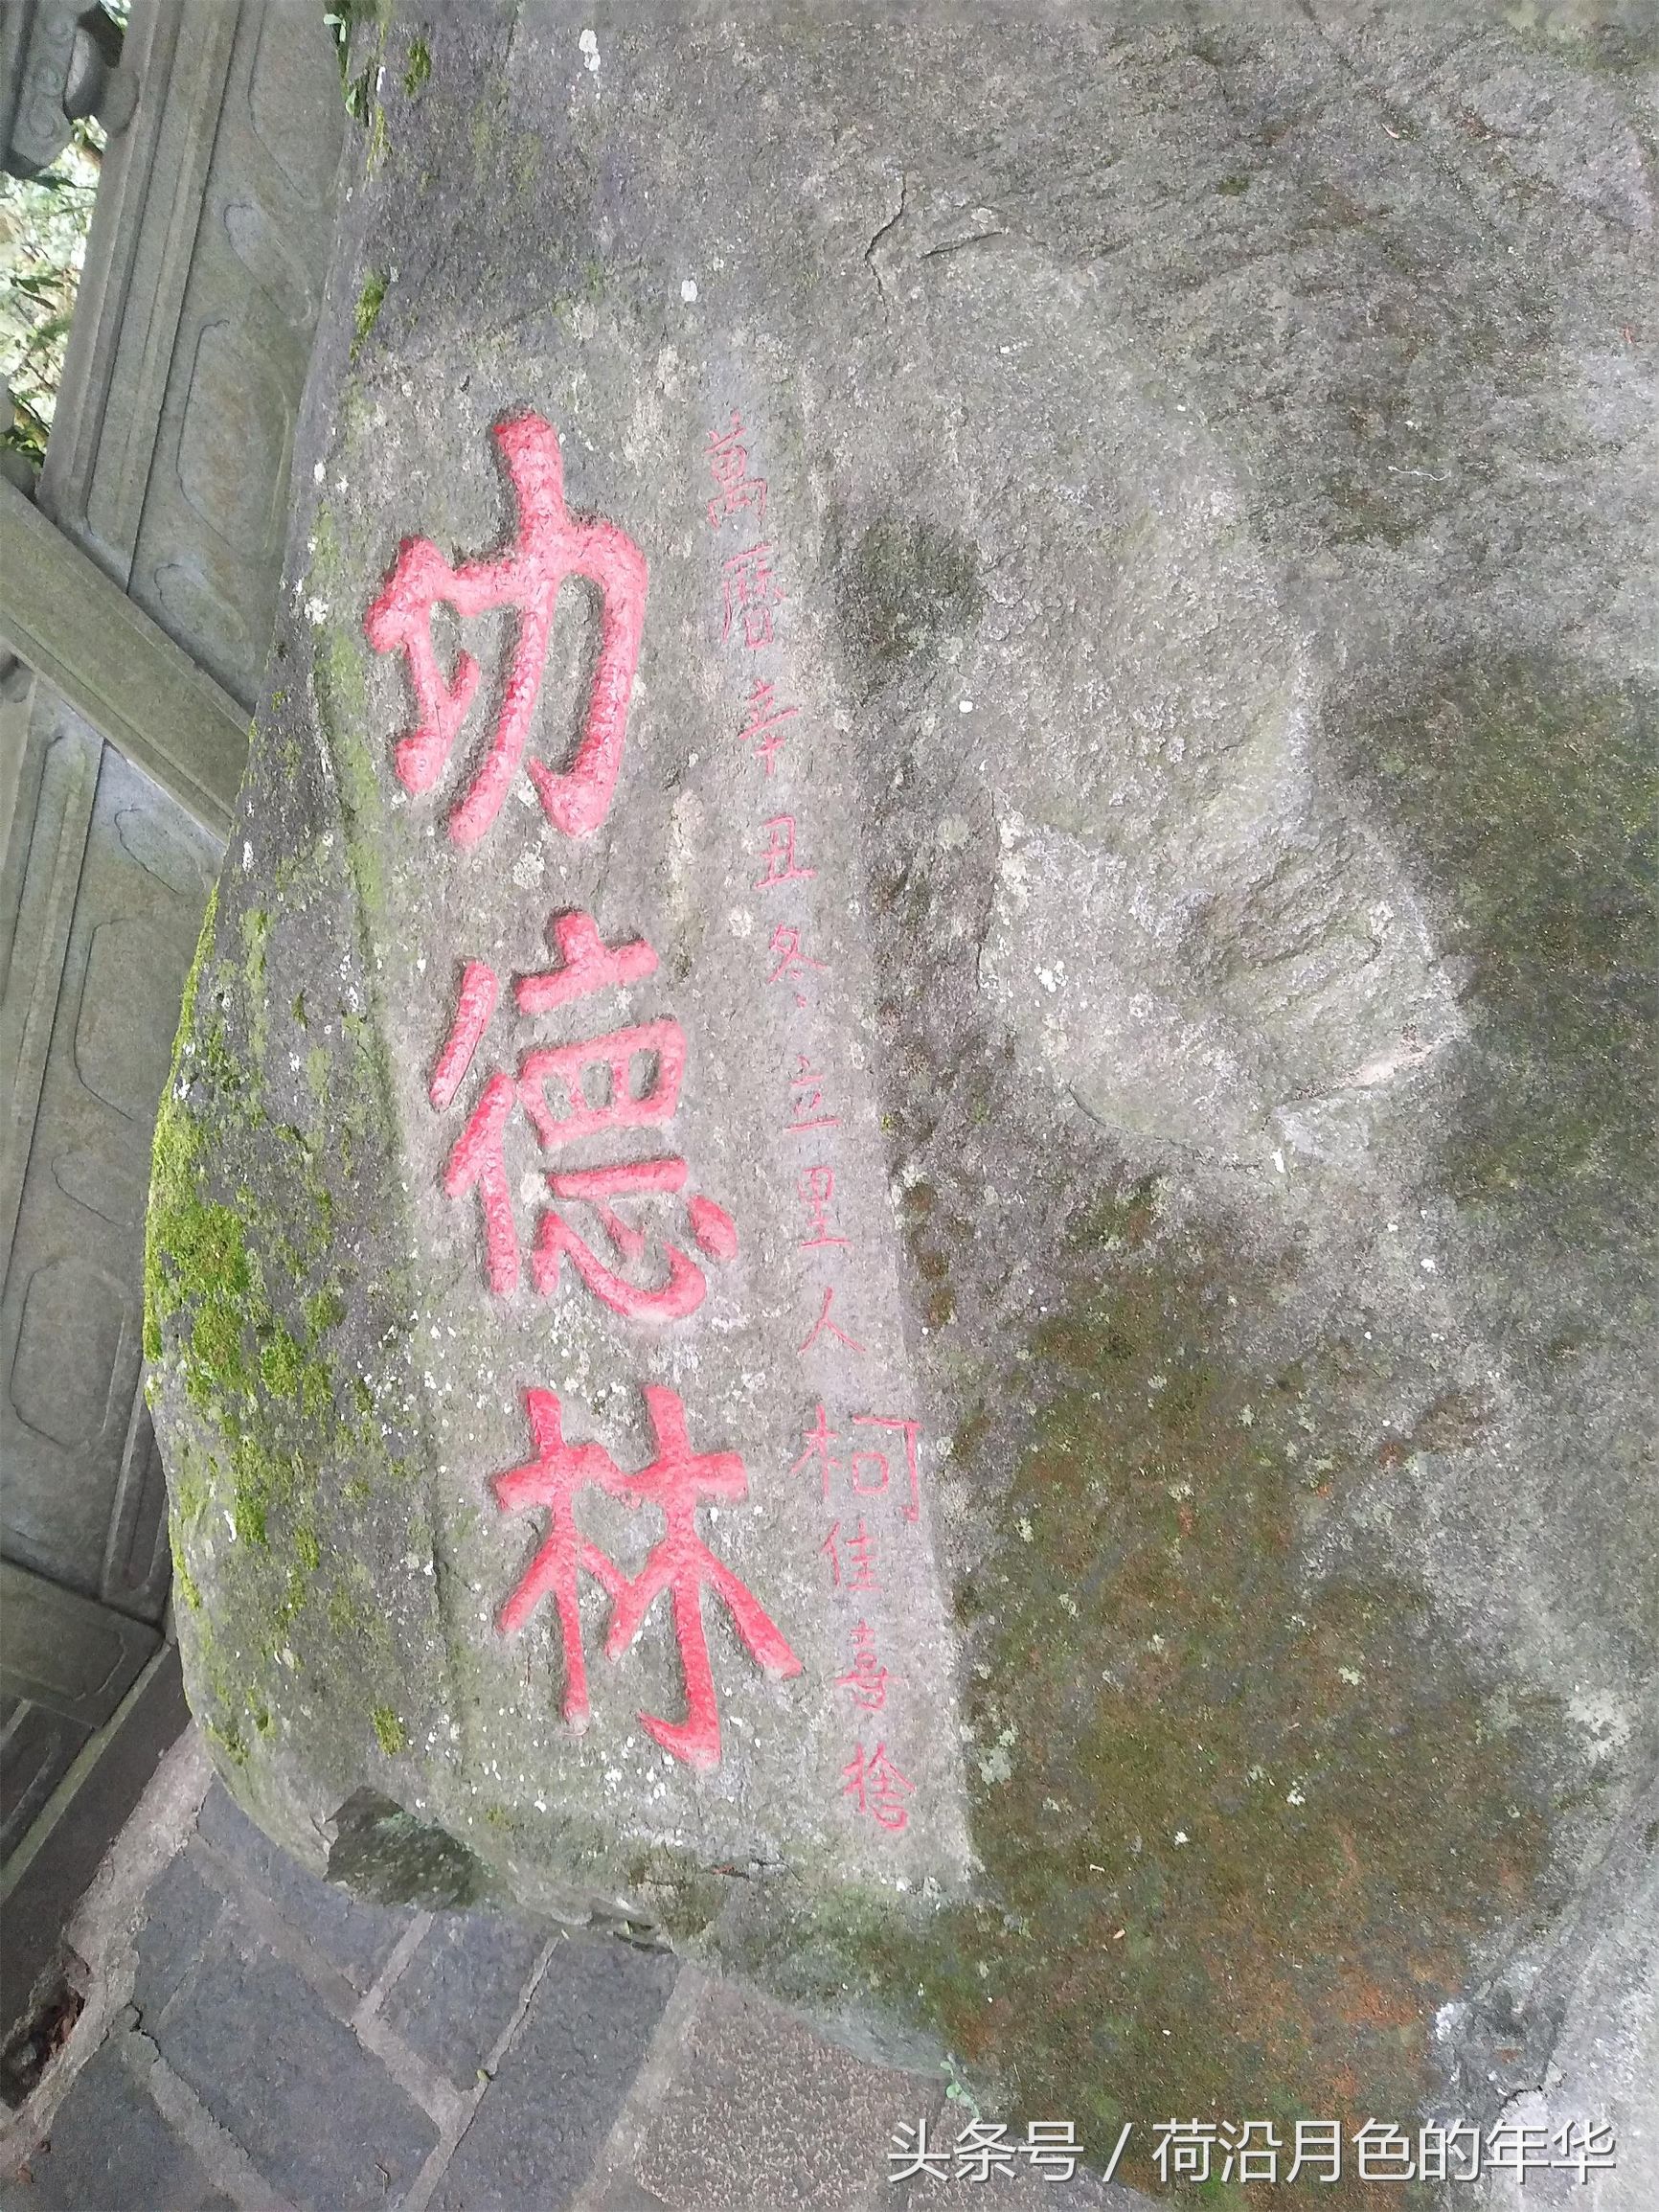 蓬莱仙境——清水岩